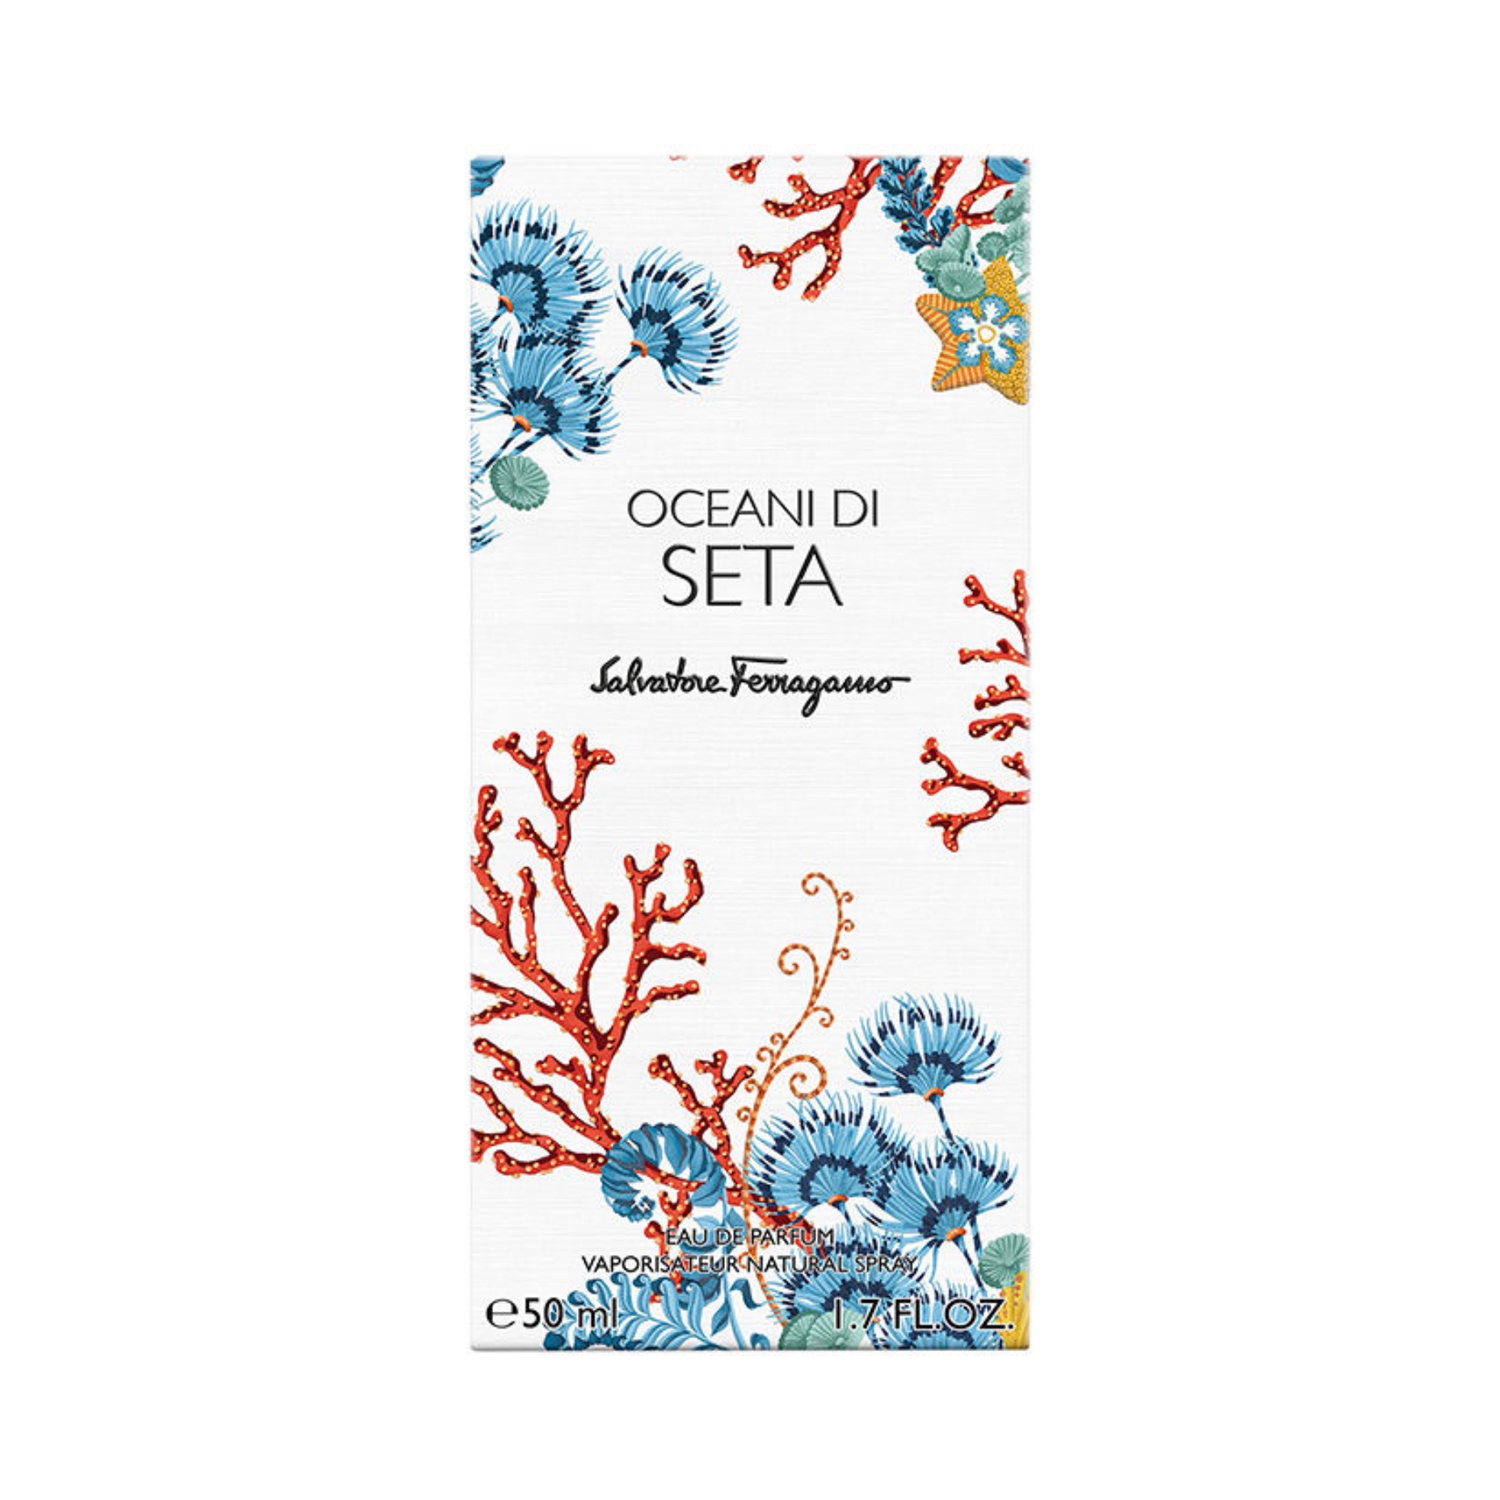 Oceani Ferragamo Parfum Di (50ml) Salvatore De Eau Seta